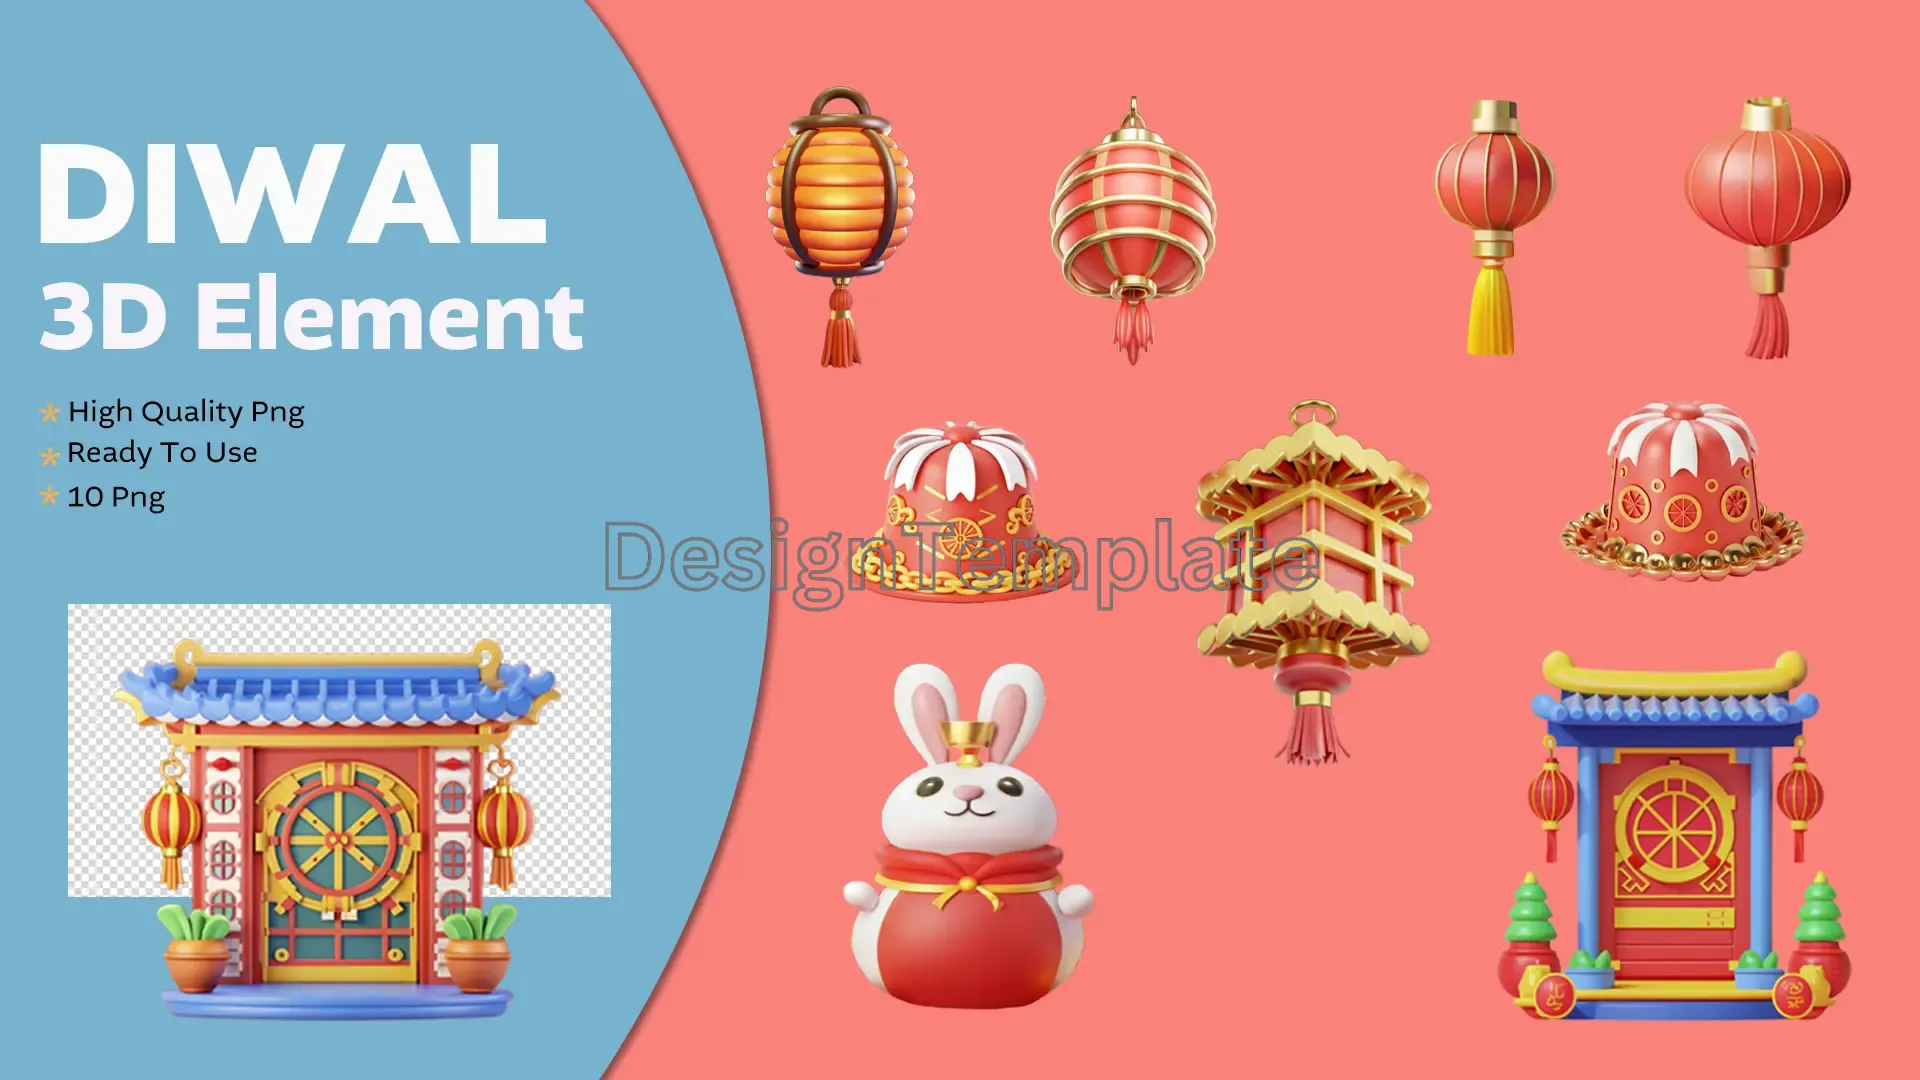 Festival of Lights Diwali 3D Elements Celebration Pack image